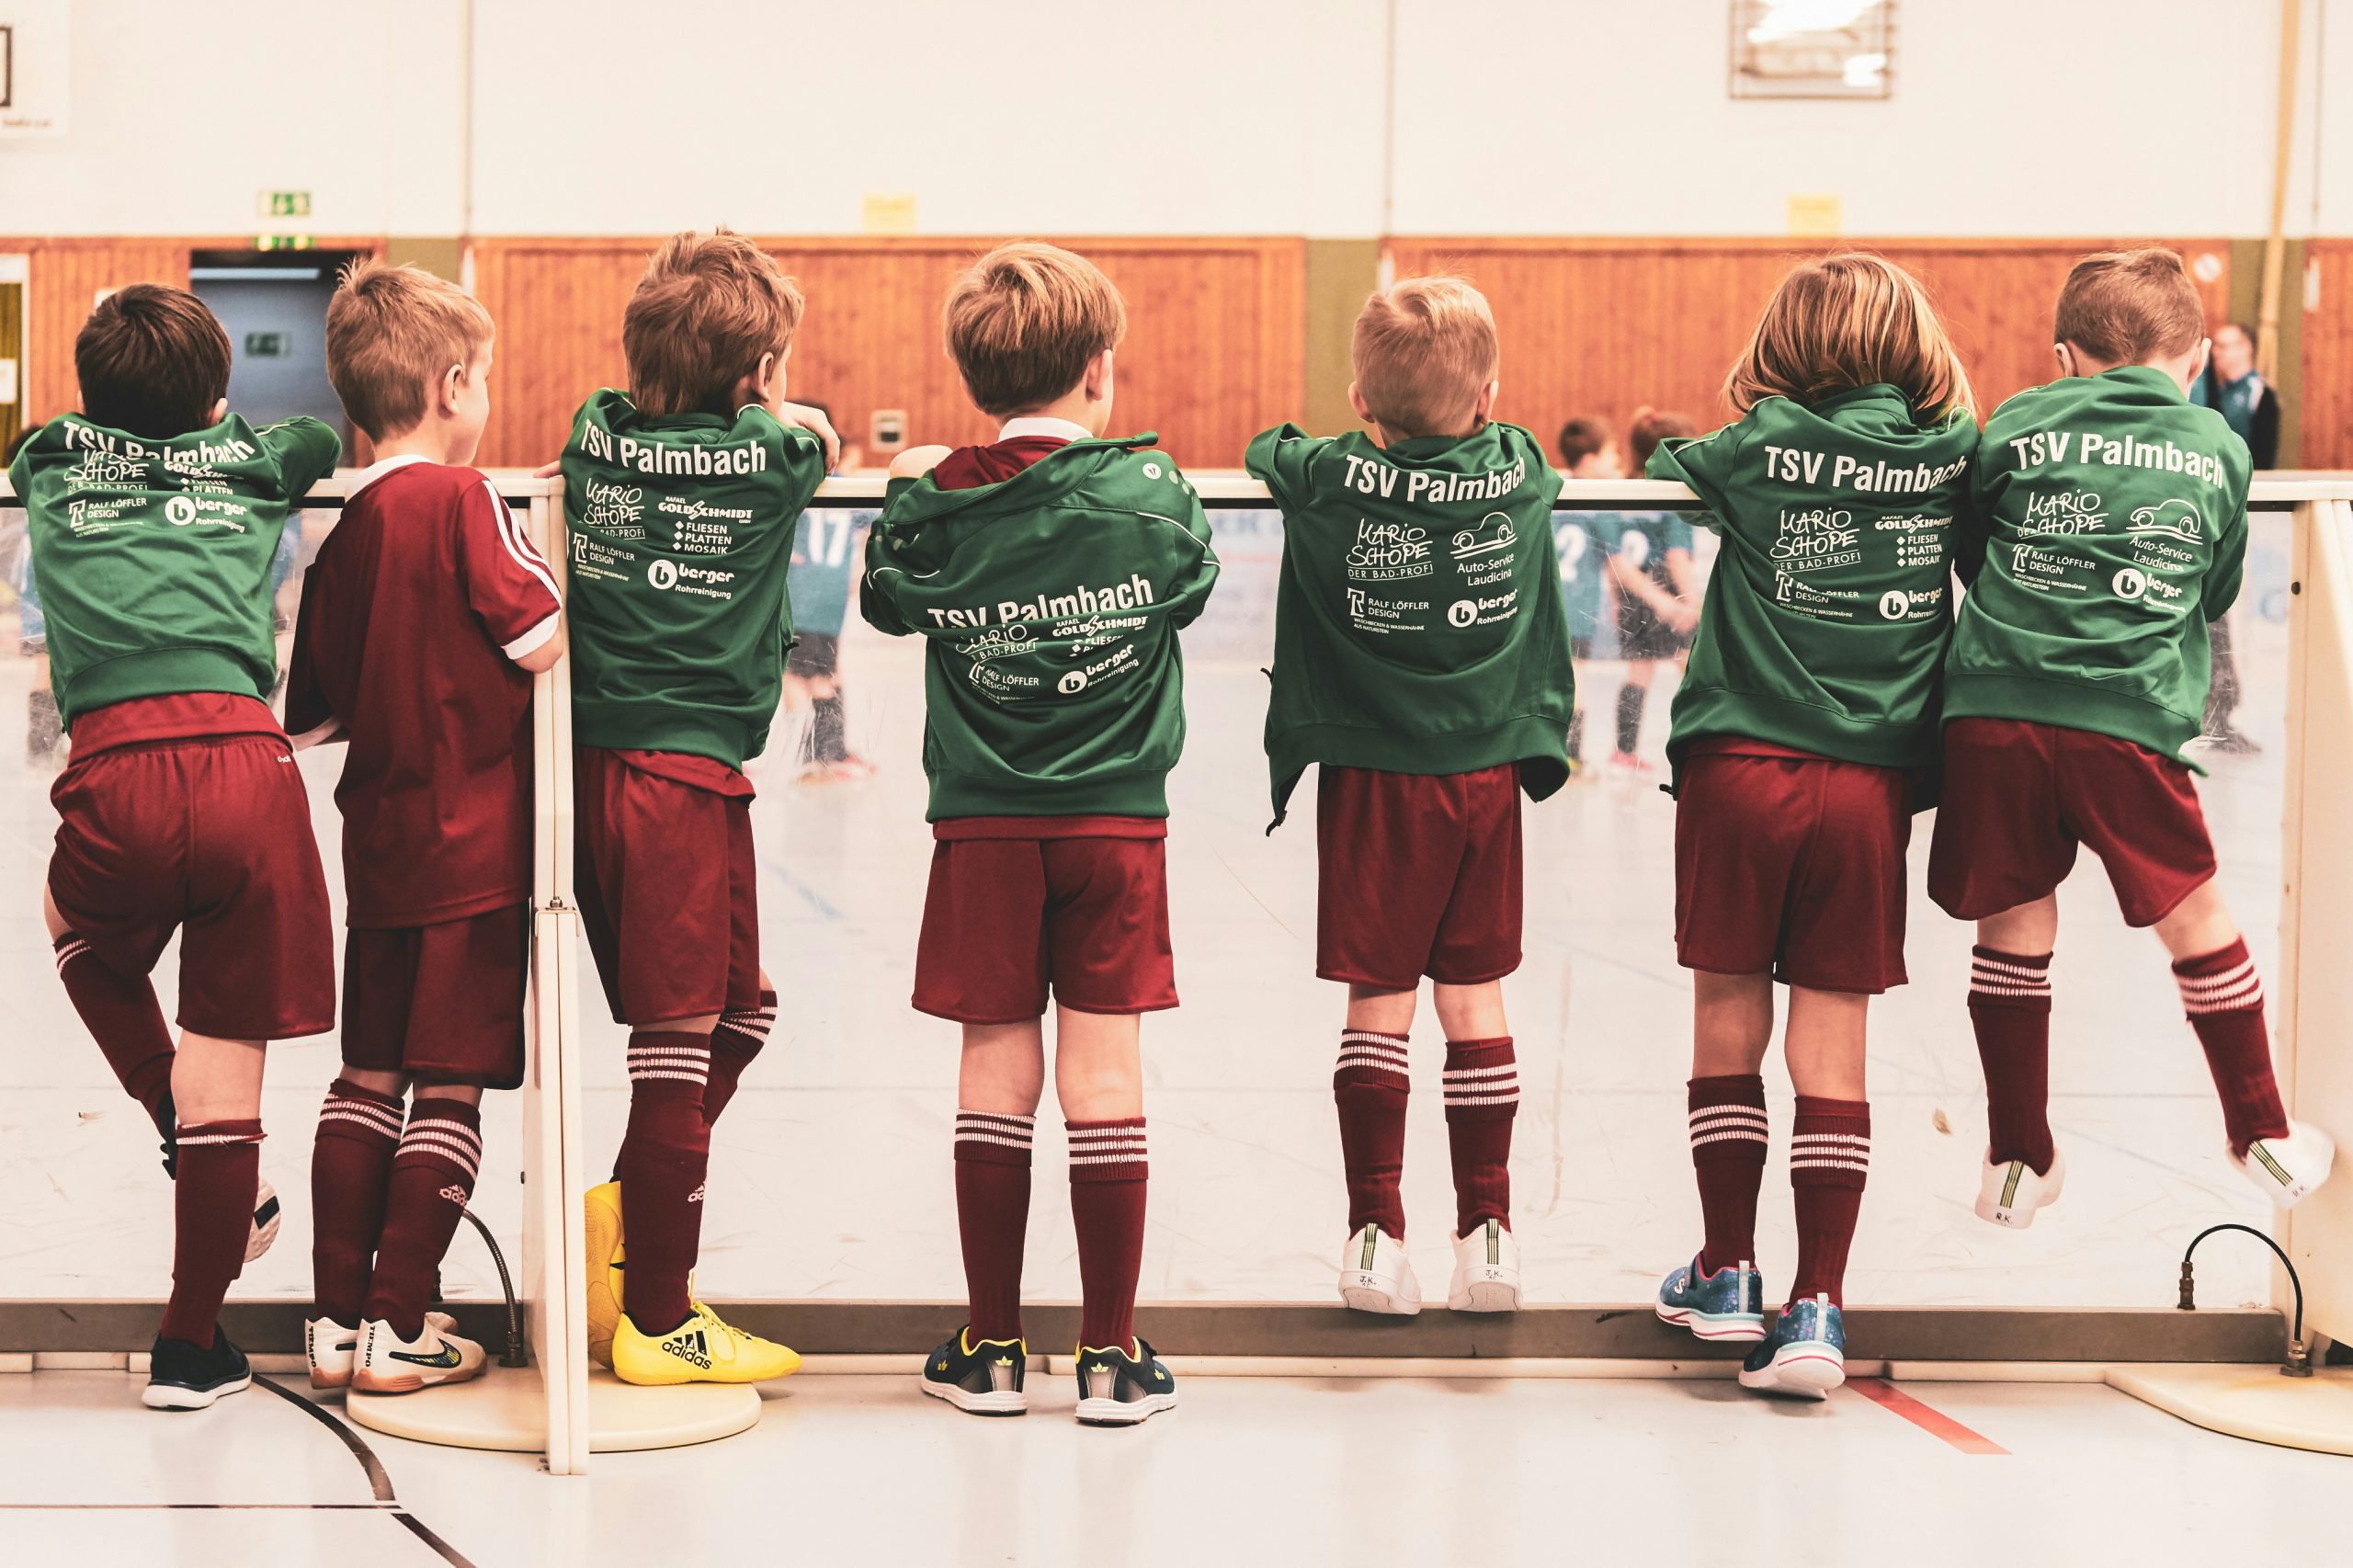 Die positiven Auswirkungen von Chelsea-Kinderfußballtrikots auf die kindliche Entwicklung